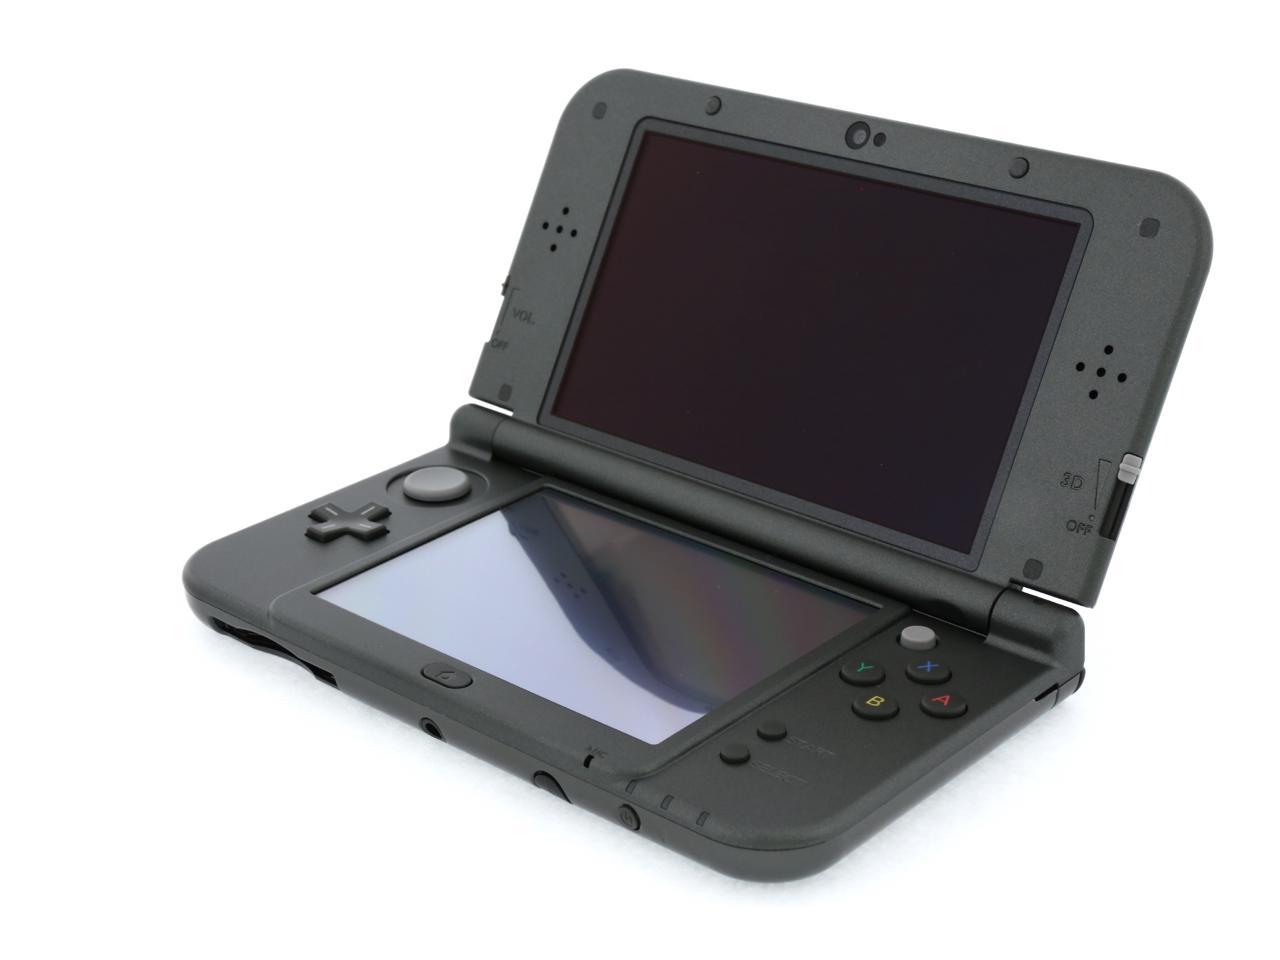 Nintendo New 3DS XL - Black - Newegg.com